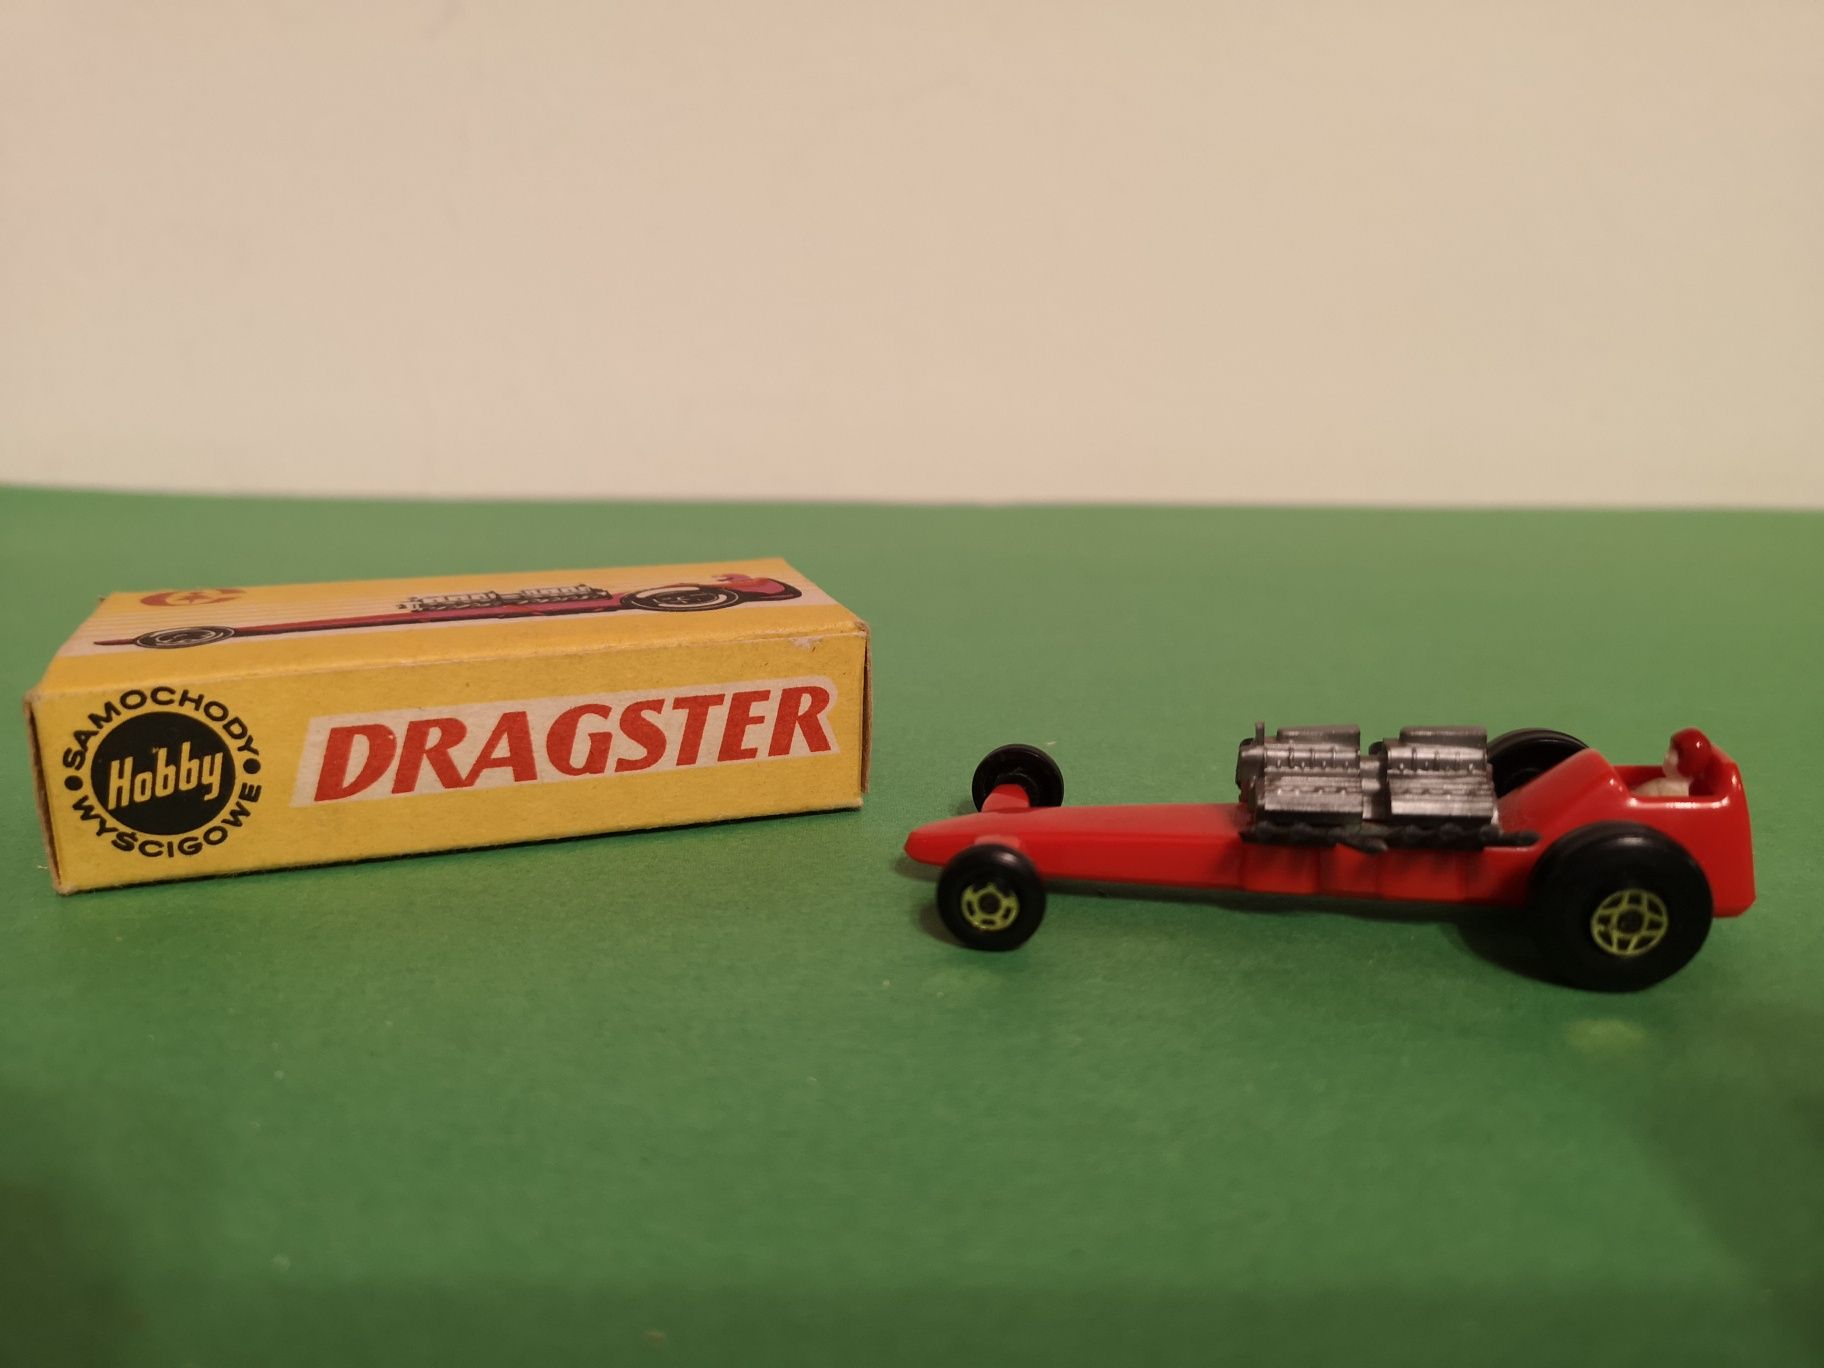 Dragster - miniatură din metal și plastic produsă de Estetyka